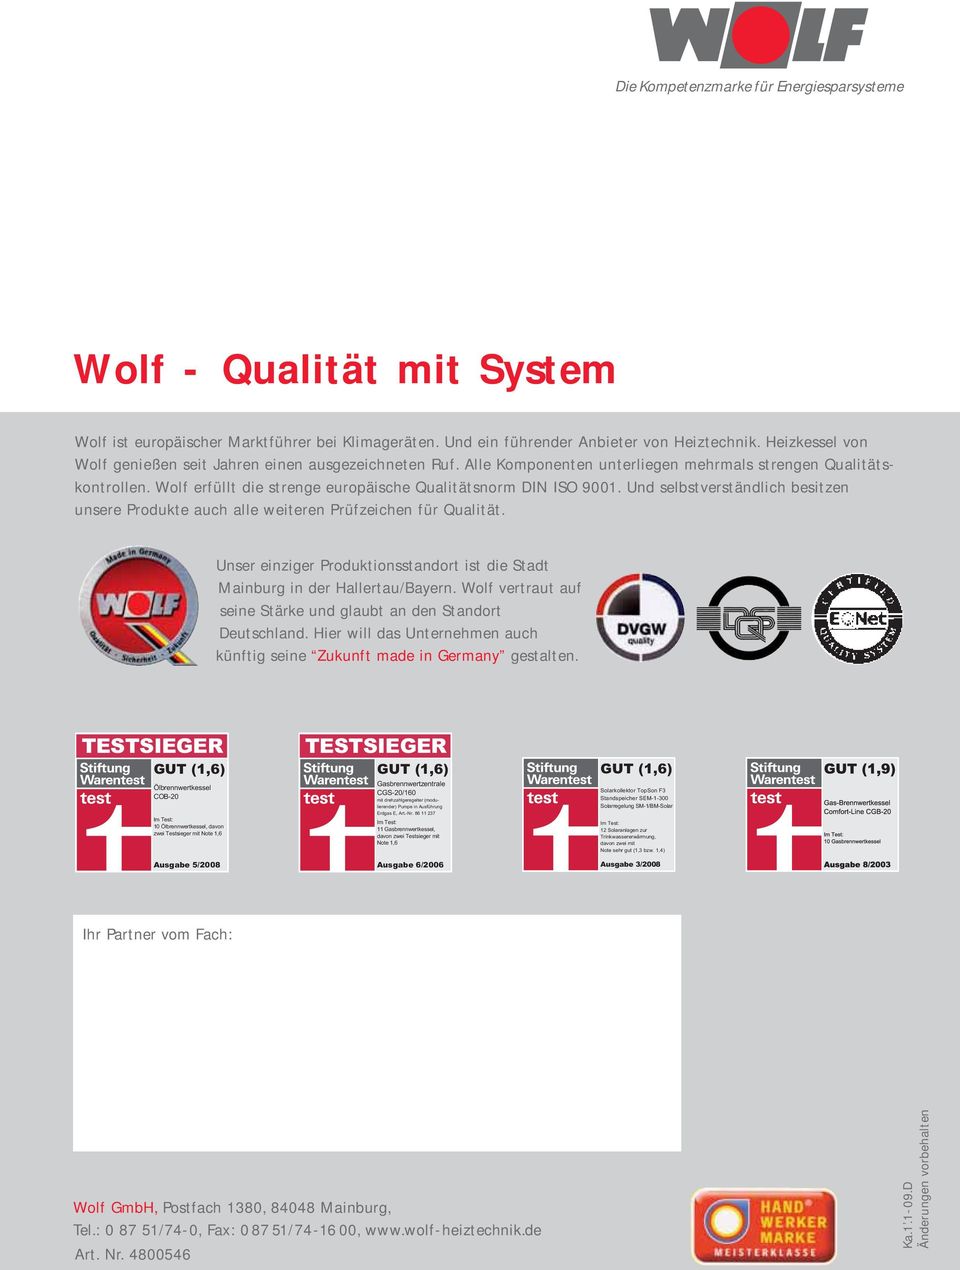 Wolf erfüllt die strenge europäische Qualitätsnorm DIN ISO 9001. Und selbstverständlich besitzen unsere Produkte auch alle weiteren Prüf zeichen für Qualität.